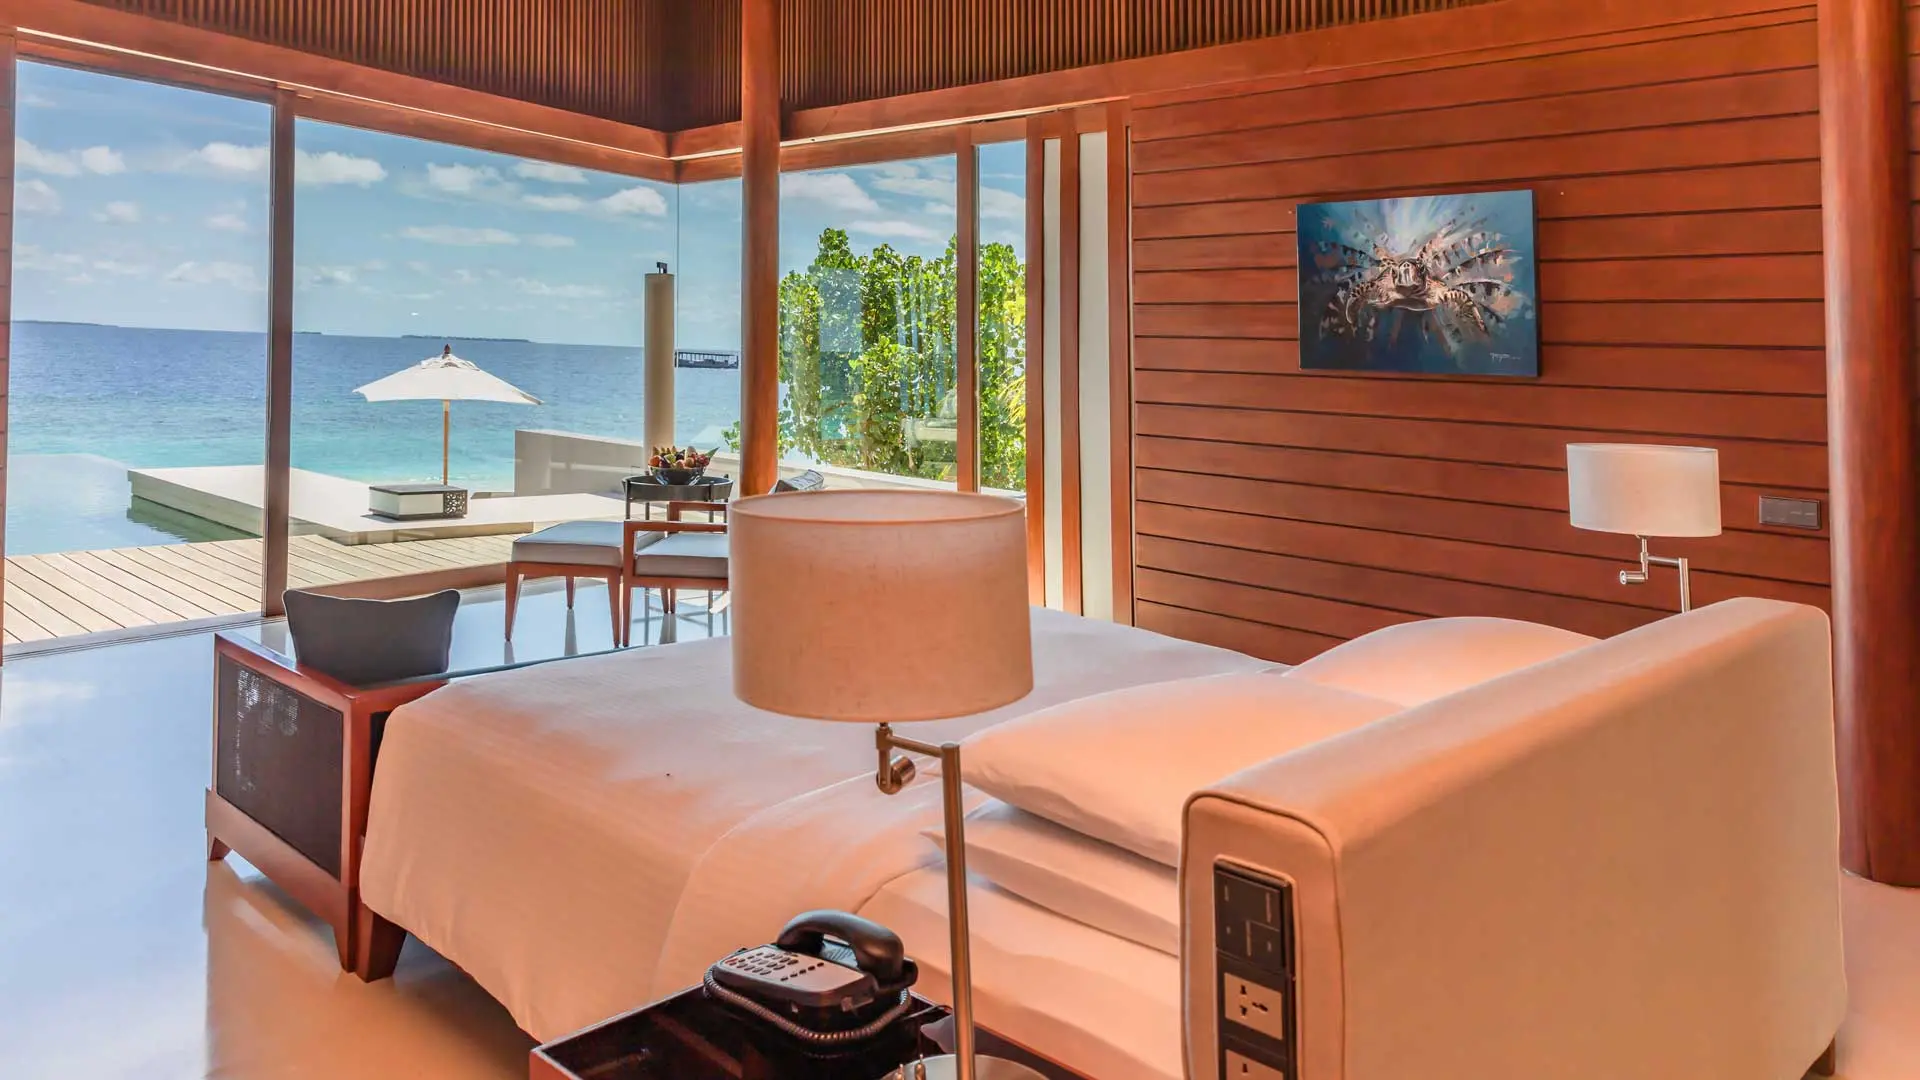 Hotel review Accommodation' - Park Hyatt Maldives Hadahaa - 0